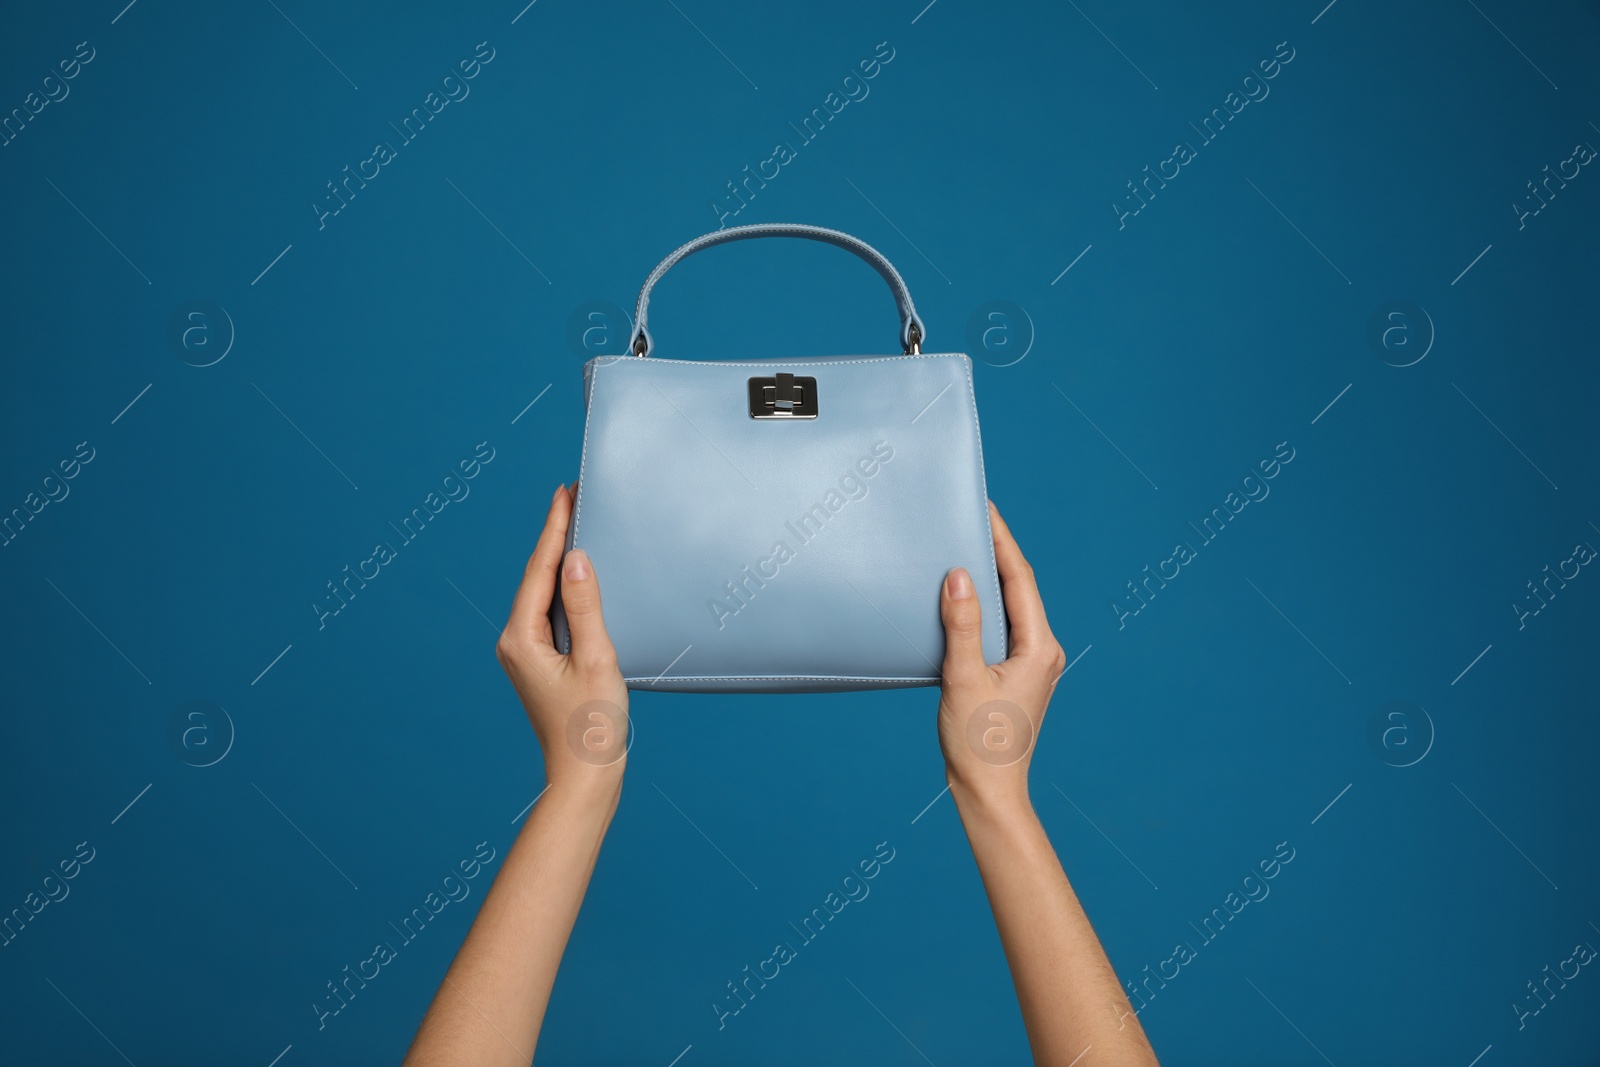 Photo of Woman holding stylish handbag on blue background, closeup